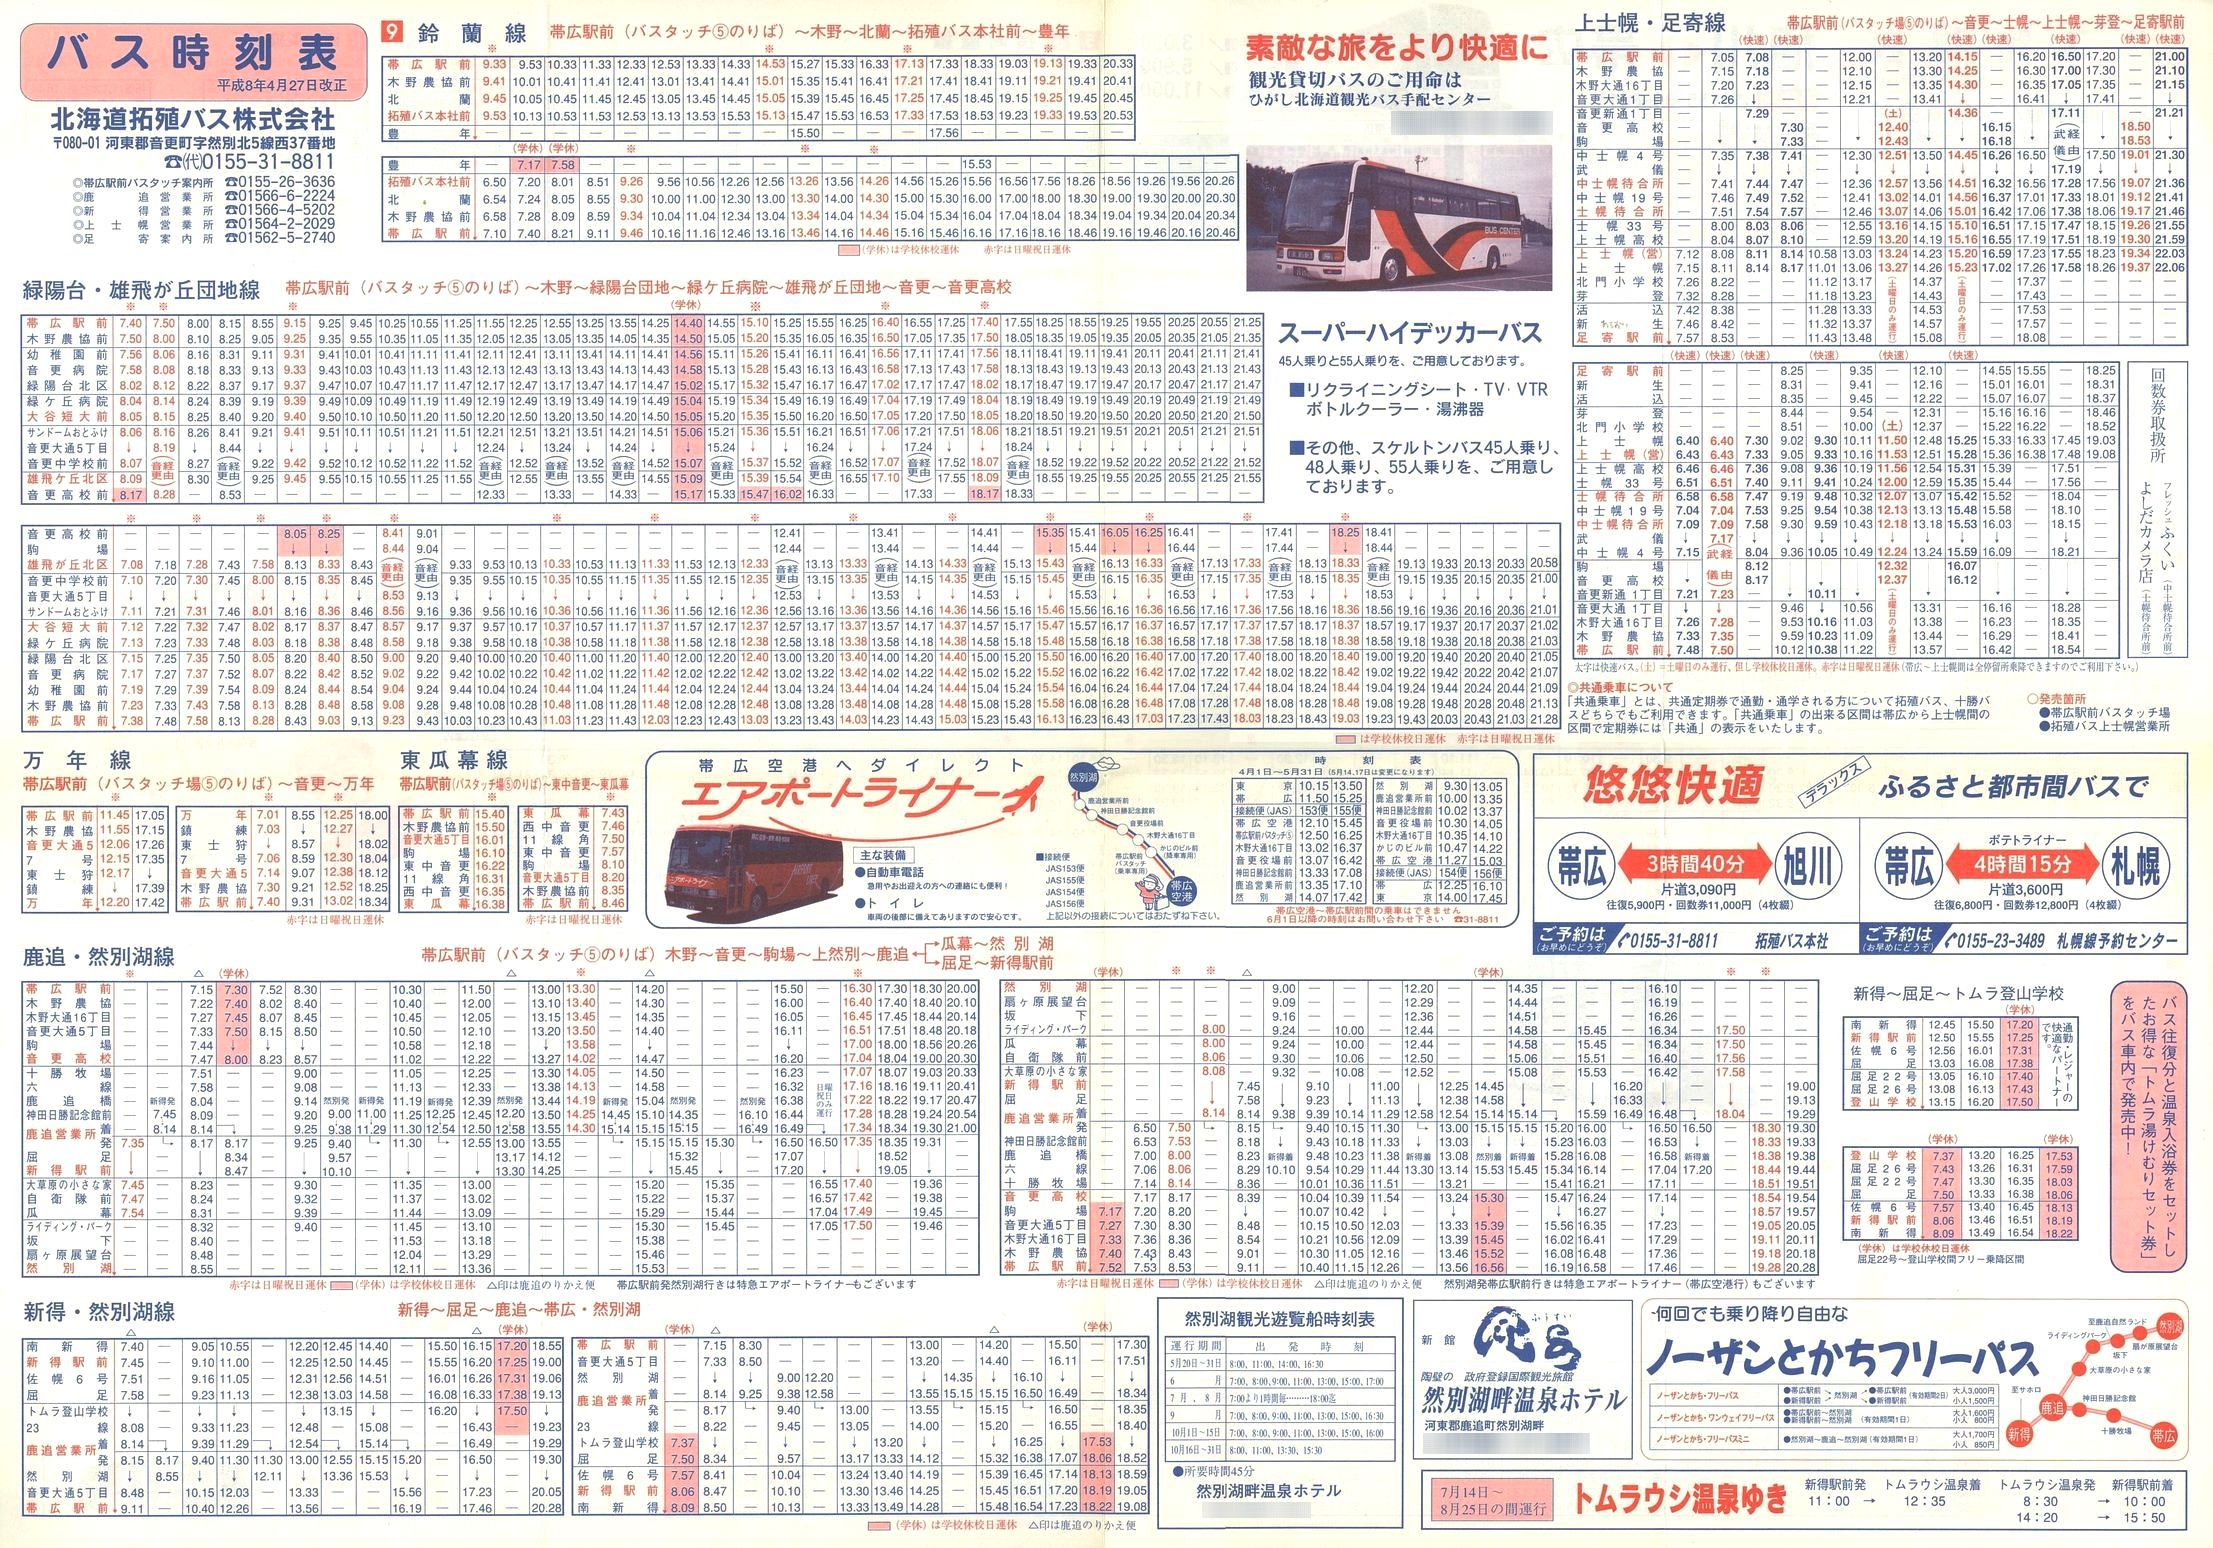 1996-04-27改正_北海道拓殖バス_時刻表裏面